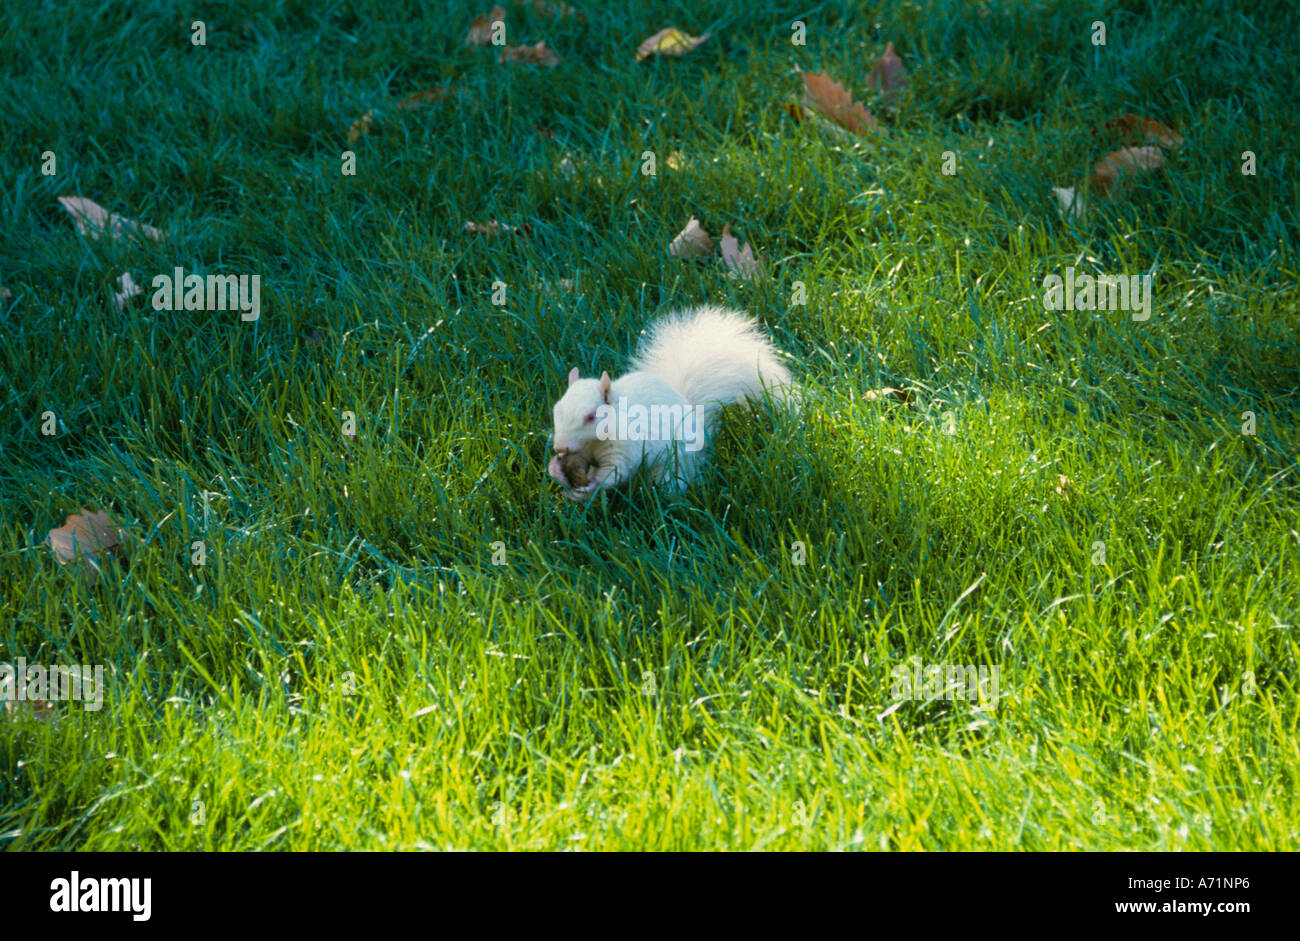 Washington DC White Albino Squirrel With Nut Stock Photo